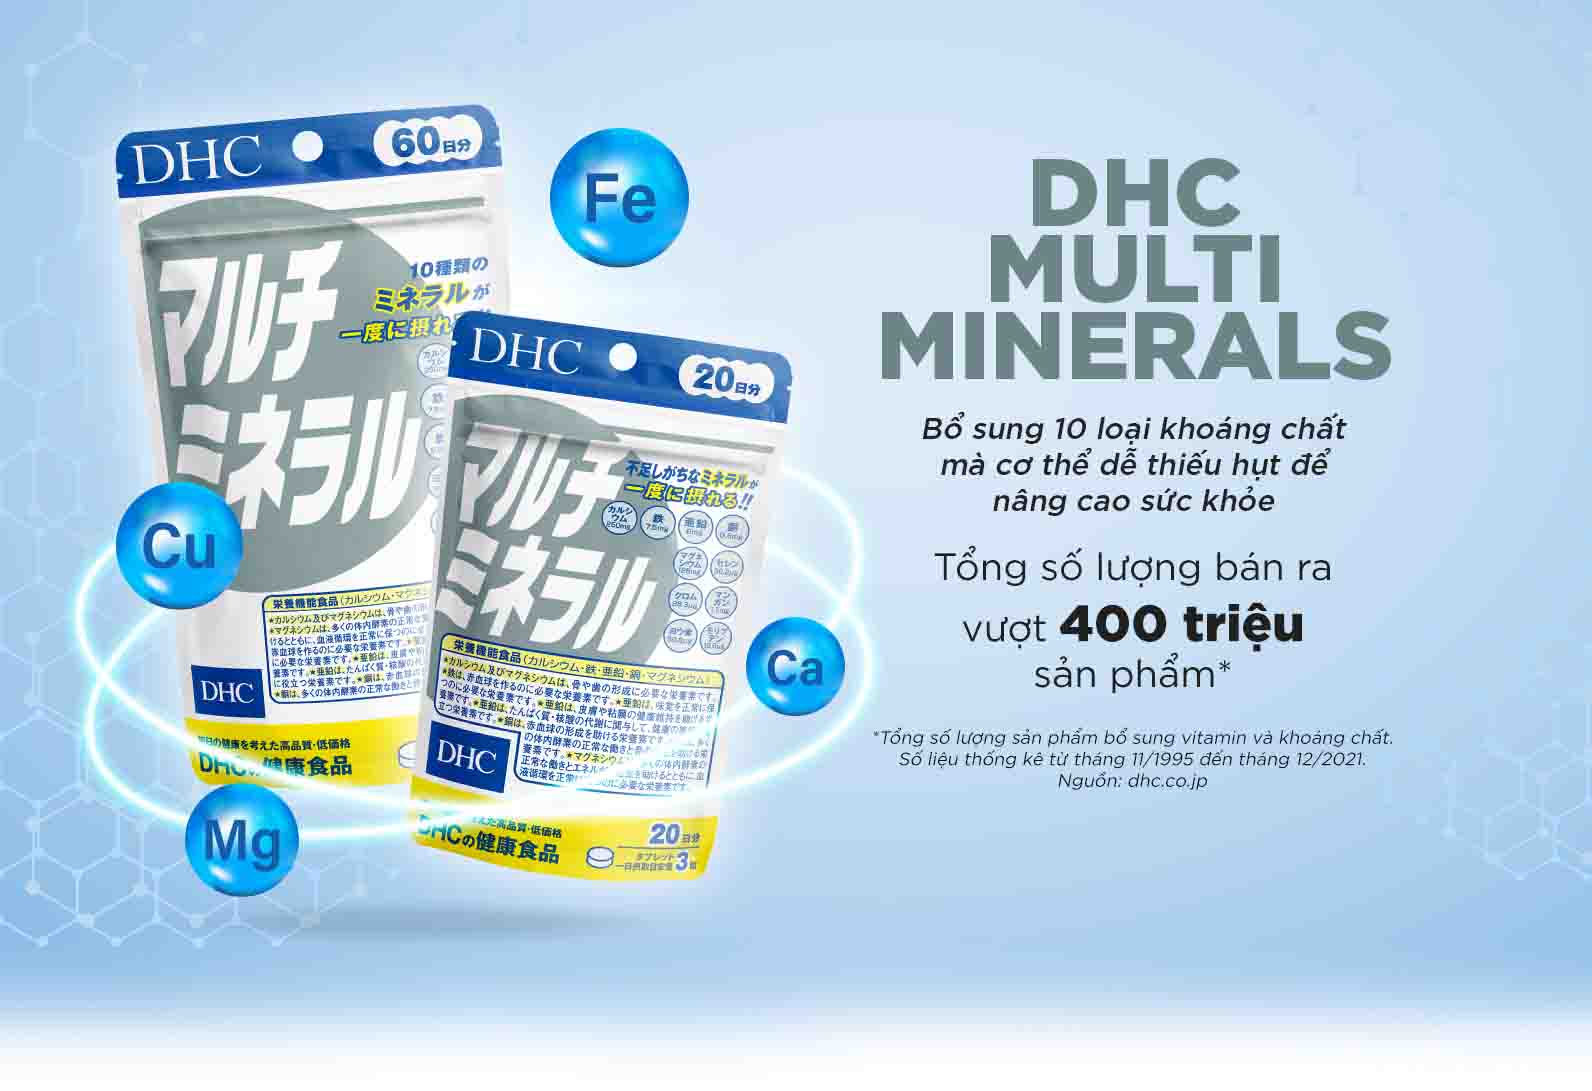 Viên uống khoáng tổng hợp DHC Multi Minerals